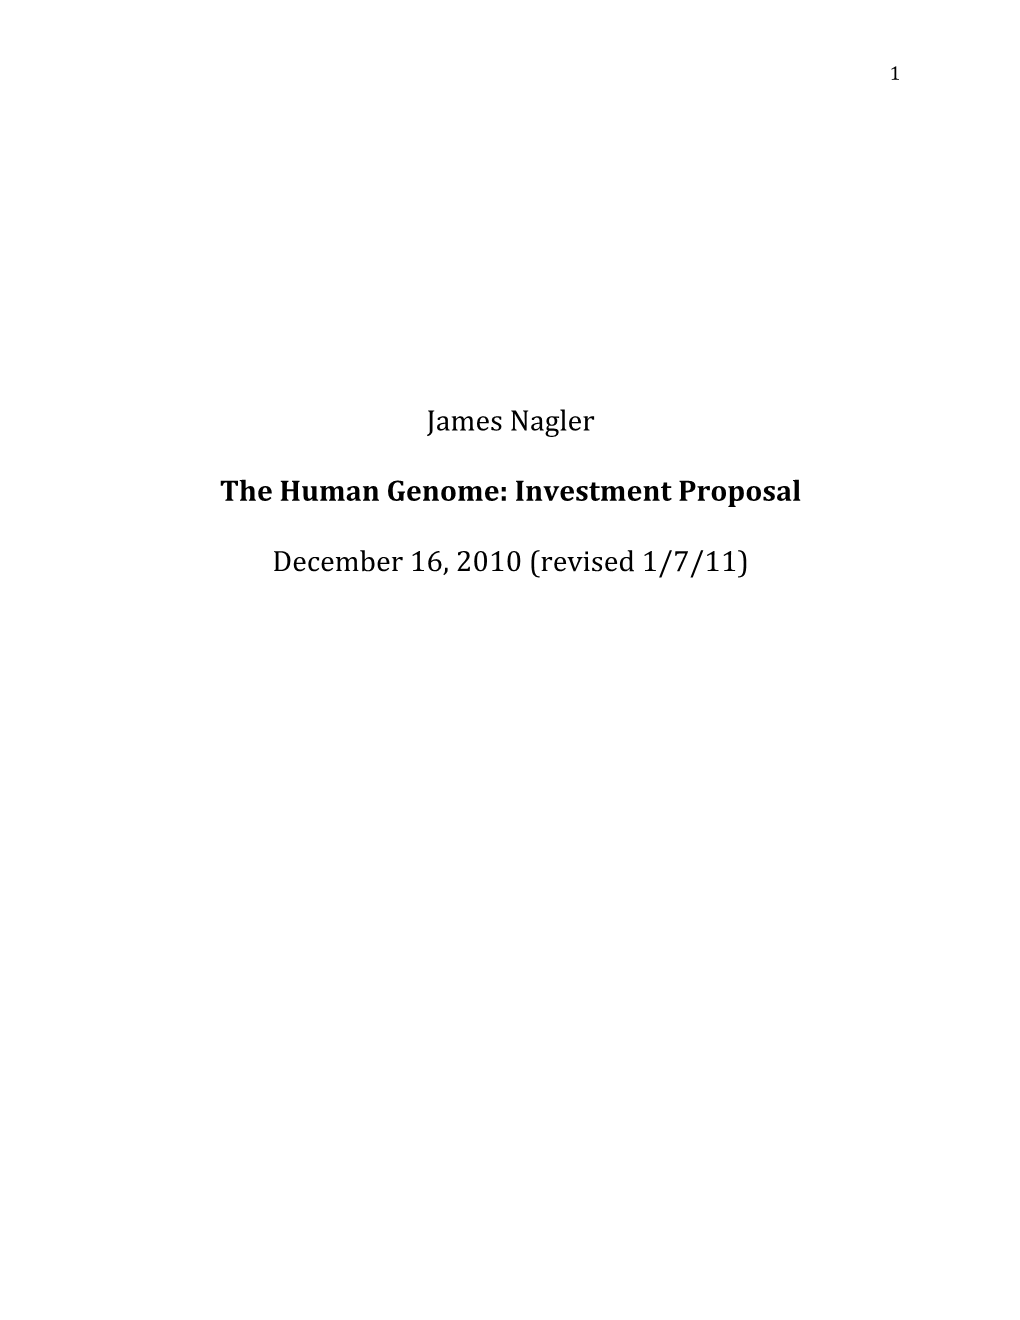 James Nagler the Human Genome: Investment Proposal December 16